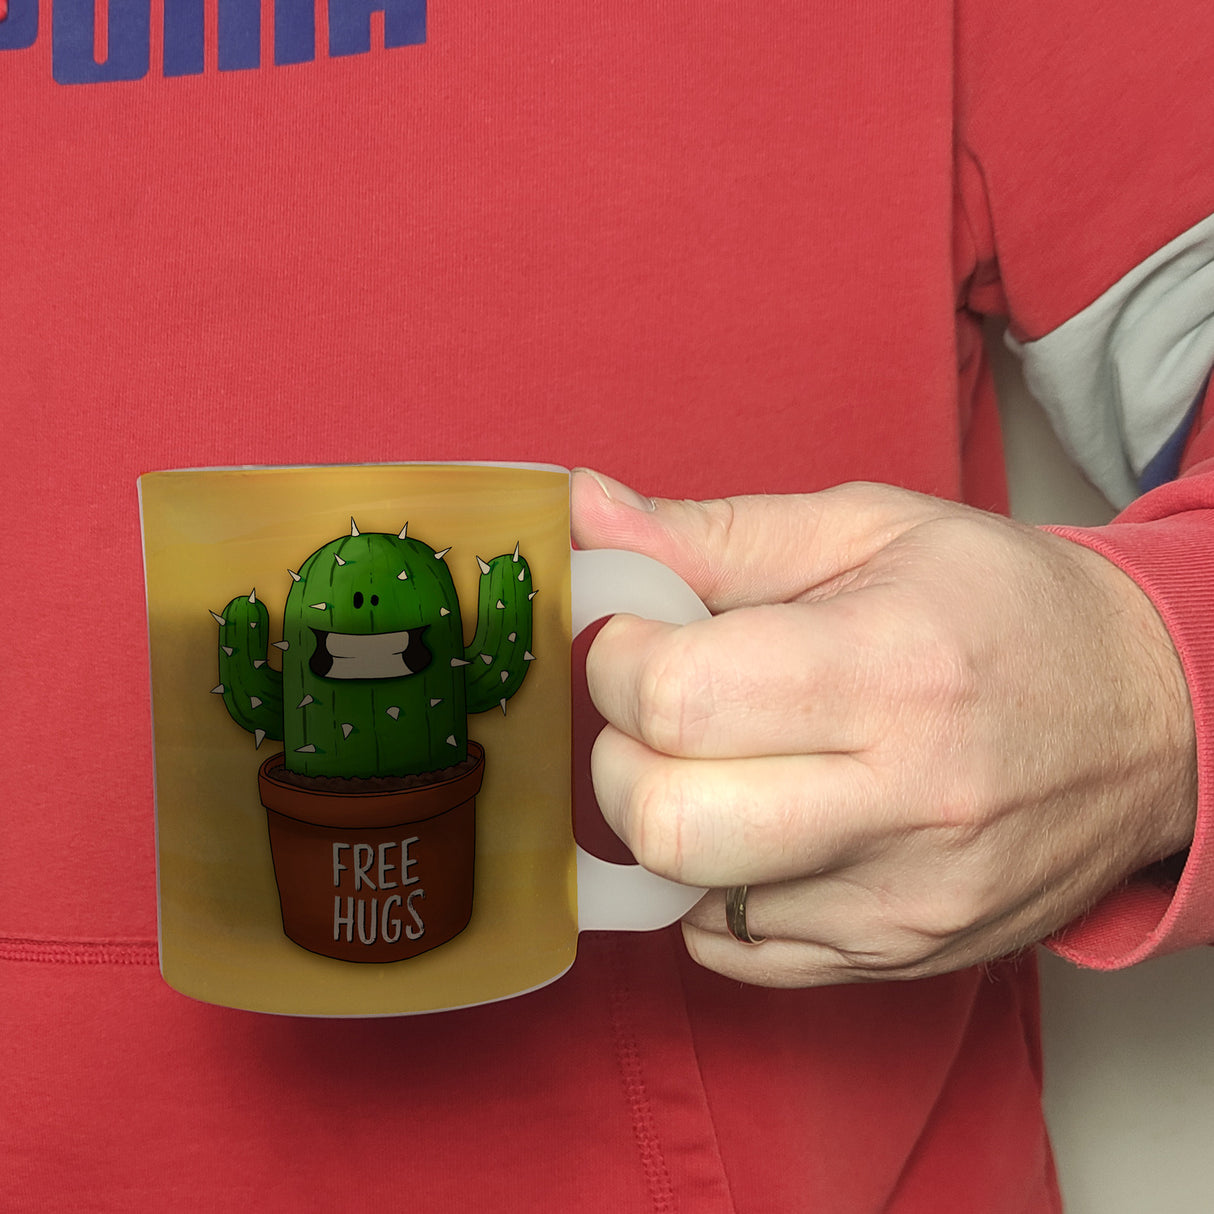 Kaffeebecher mit freundlicher Kaktus Motiv und Spruch: Free Hugs